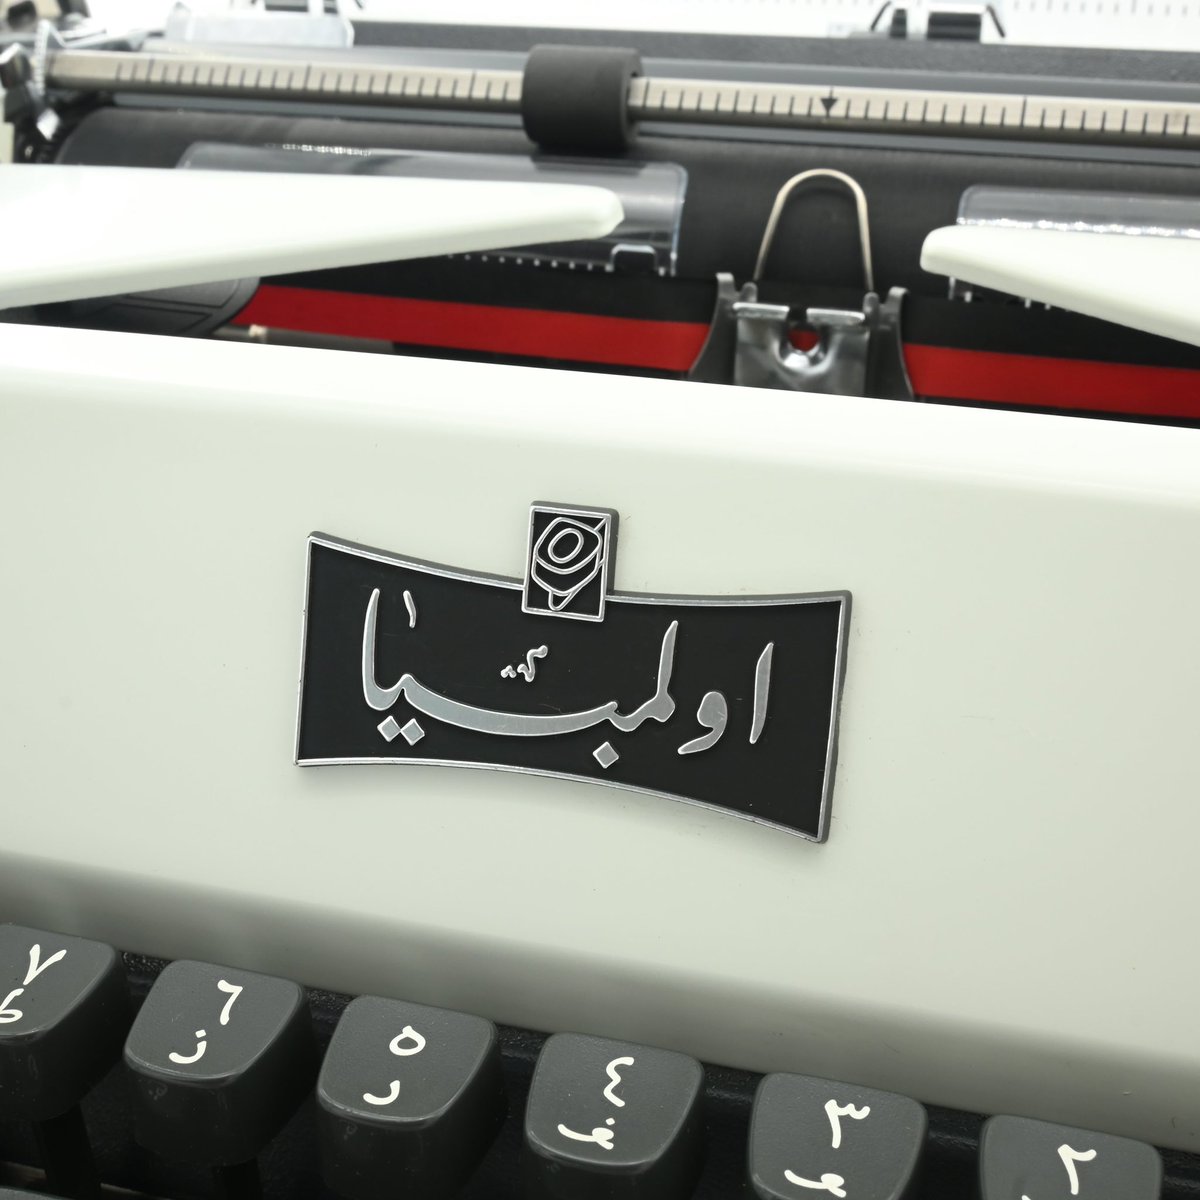 Beautiful vintage typewriter